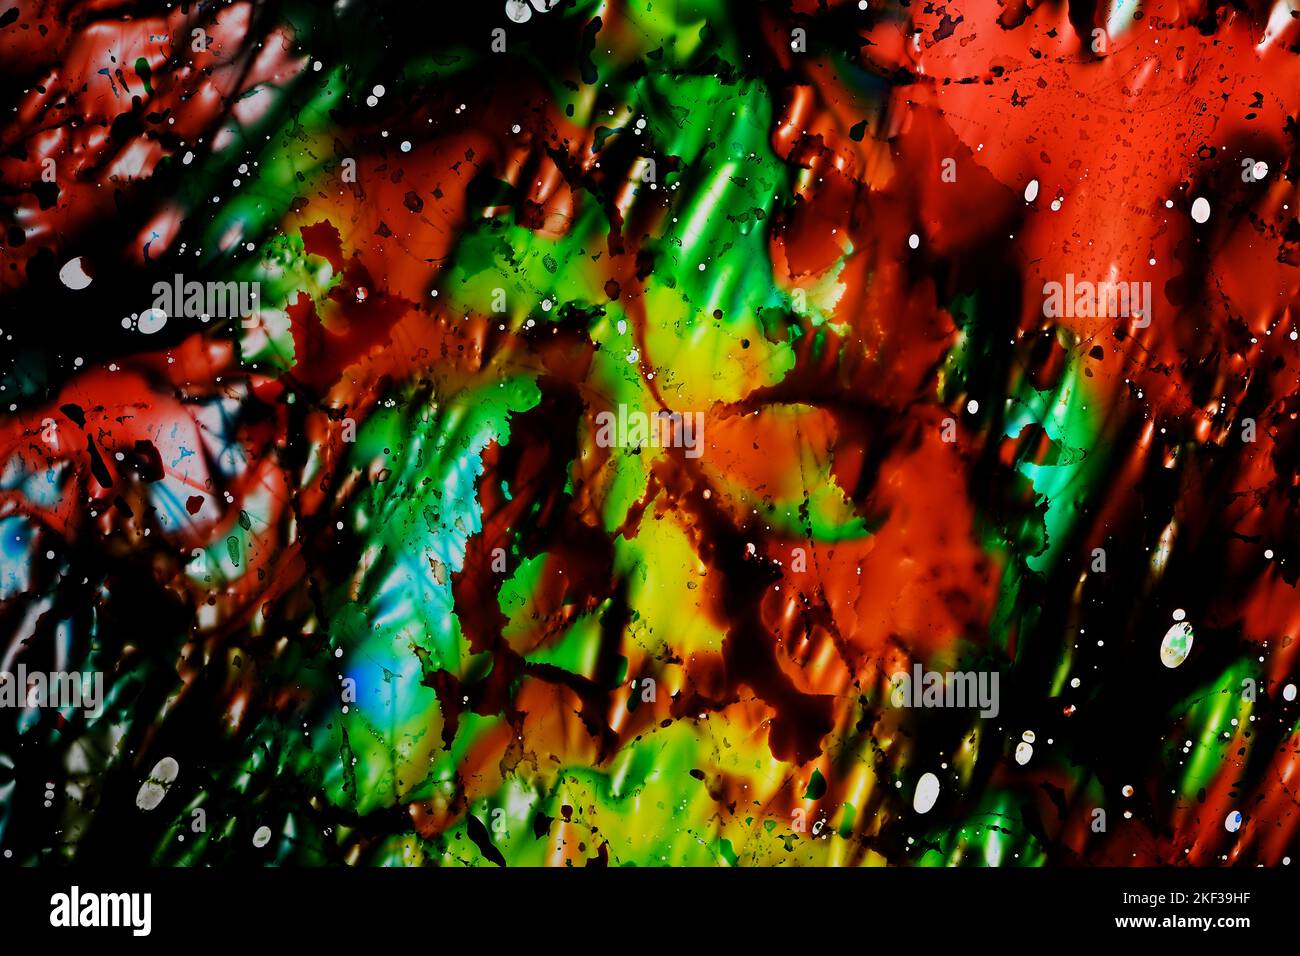 Eine lebhafte chaotische abstrakte Mischung aus blauen, grünen, gelben und roten Lebensmittelfarbstoffen auf einer dünnen Folie aus leicht zerbrochenem Kunststoff auf einer Leuchtkasten Stockfoto